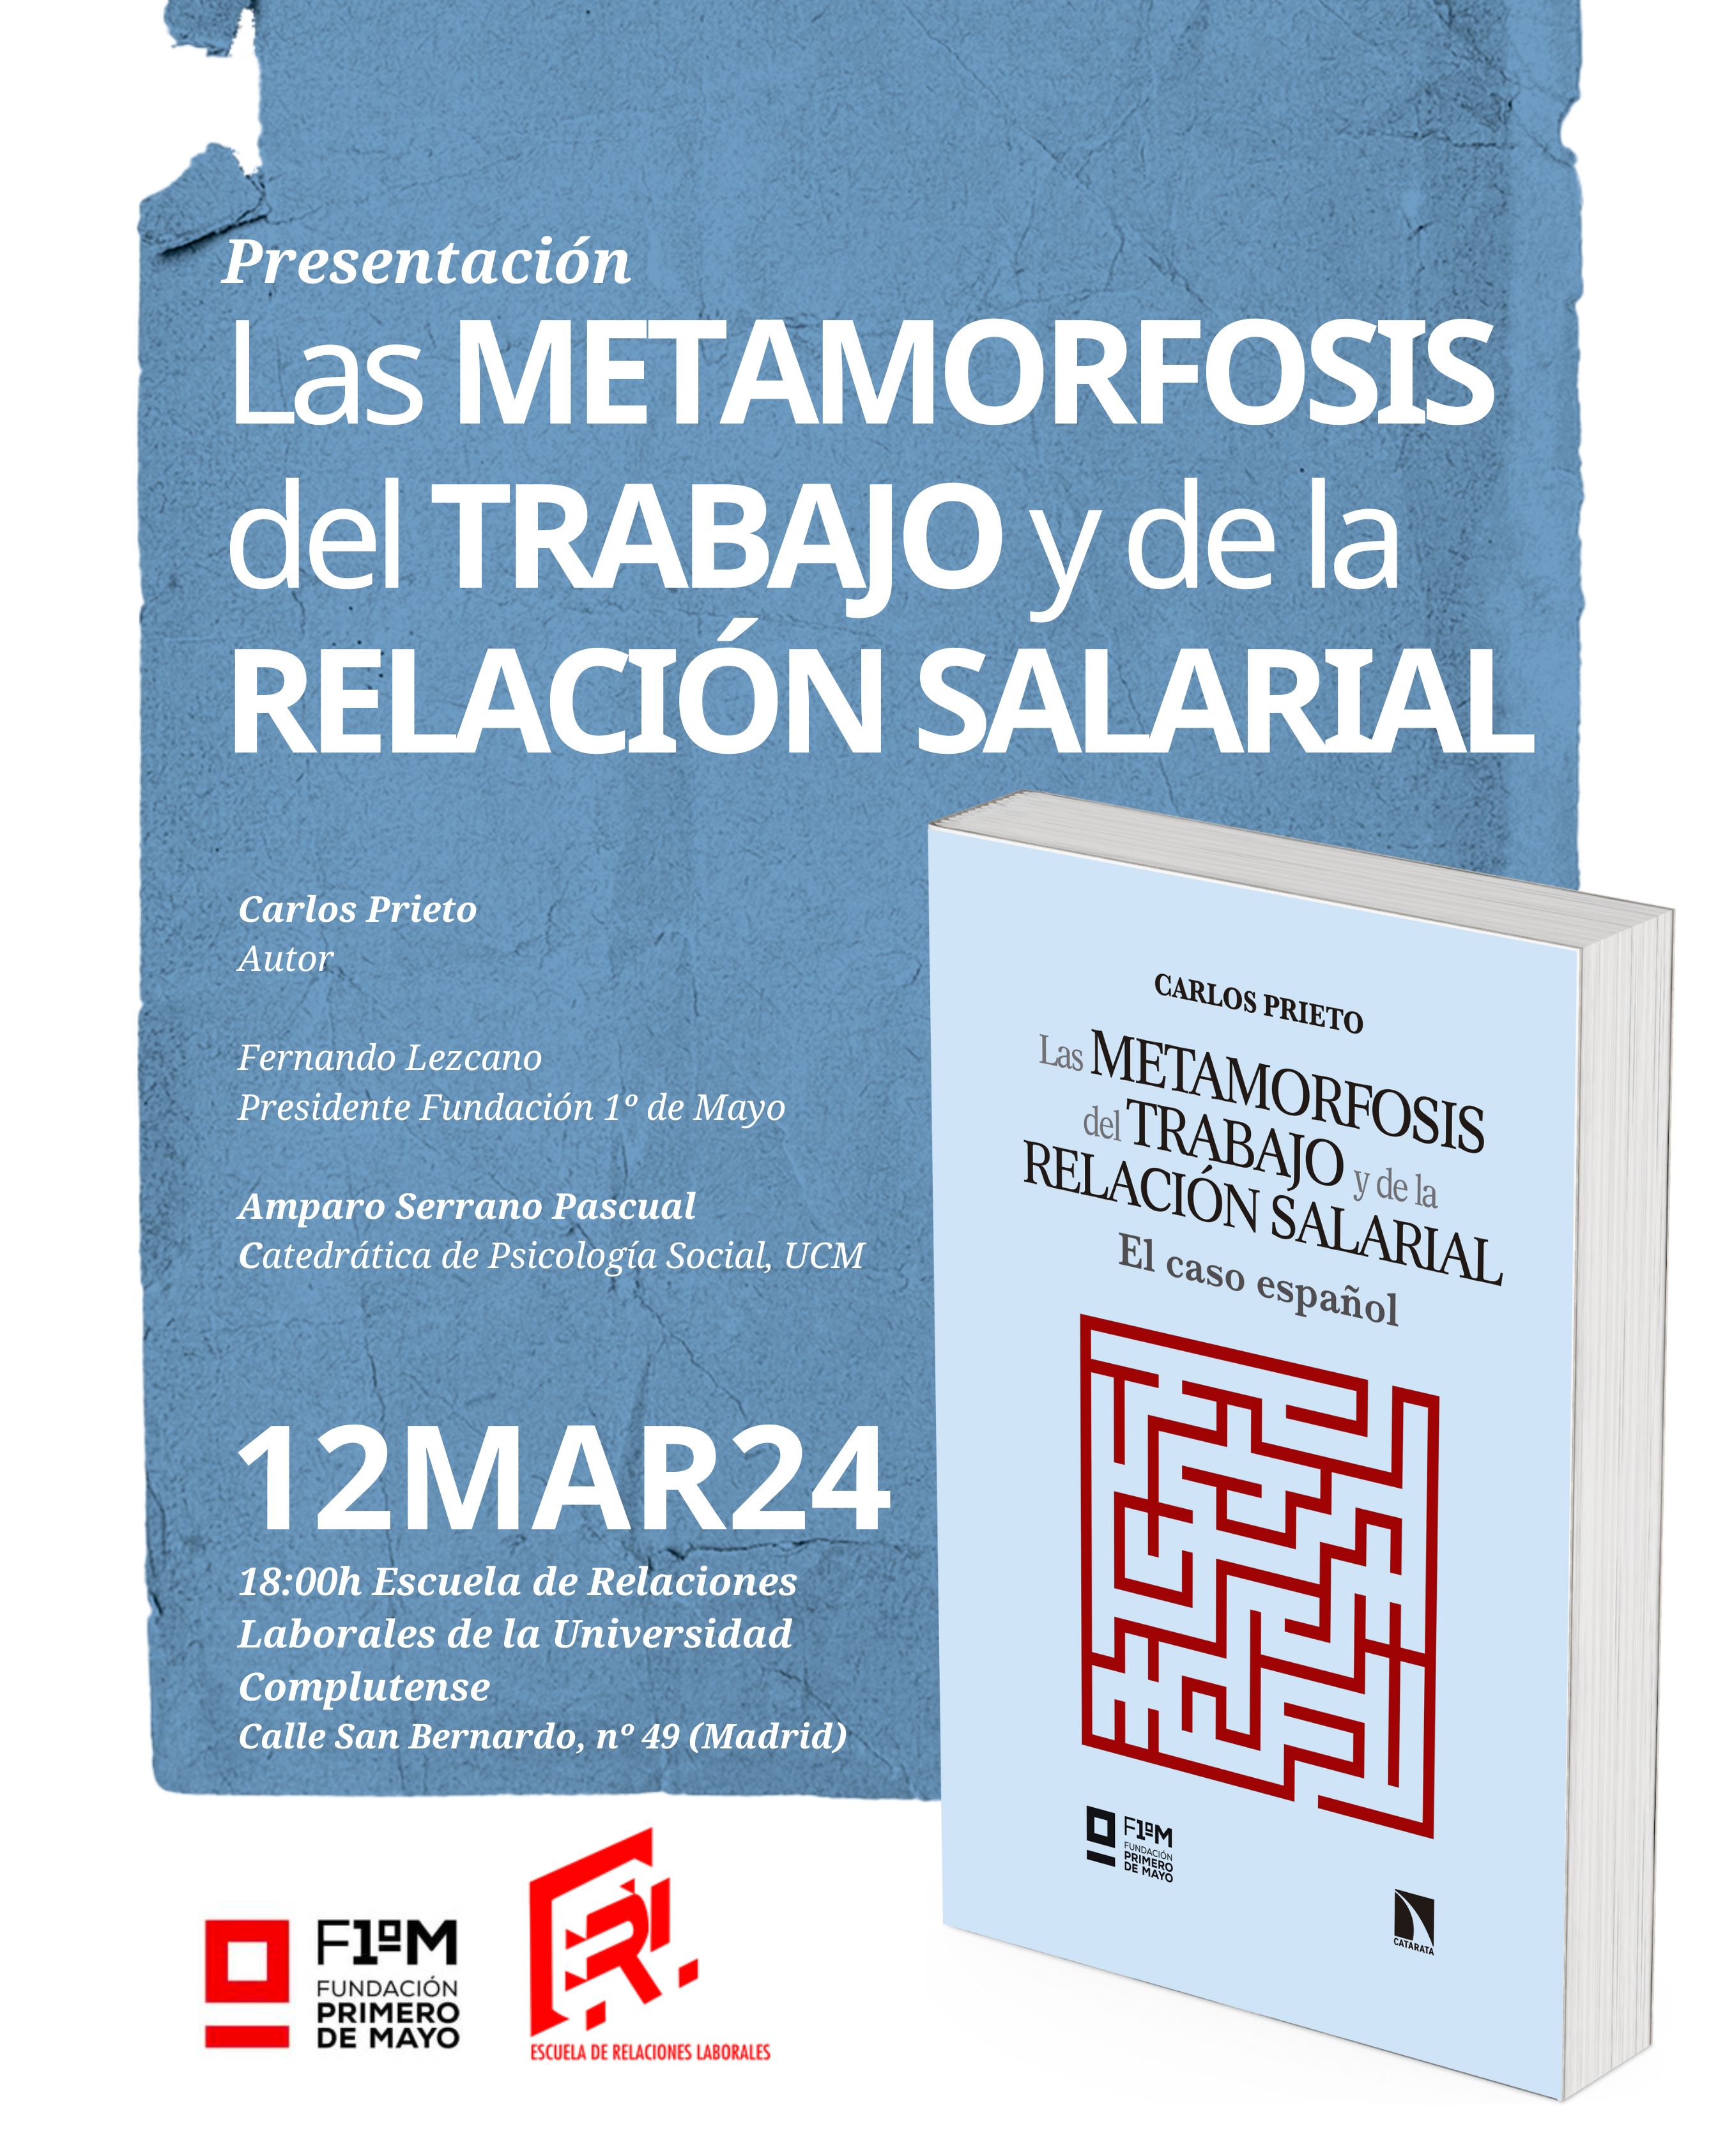 Presentación del libro: Las metamorfosis del trabajo y de la relación salarial